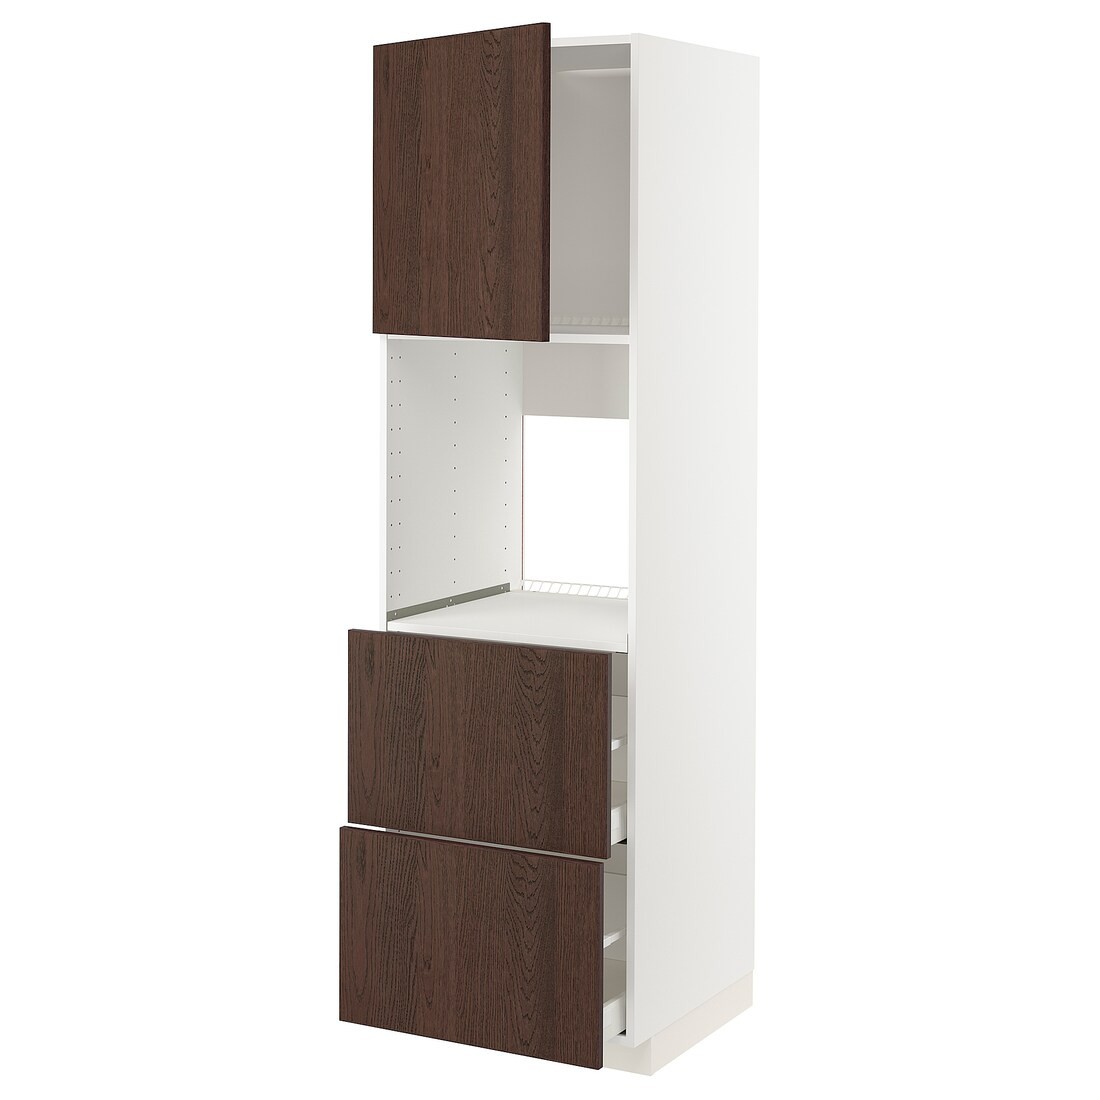 METOD МЕТОД / MAXIMERA МАКСИМЕРА Высокий шкаф для духовки с дверцей / ящиками, белый / Sinarp коричневый, 60x60x200 см